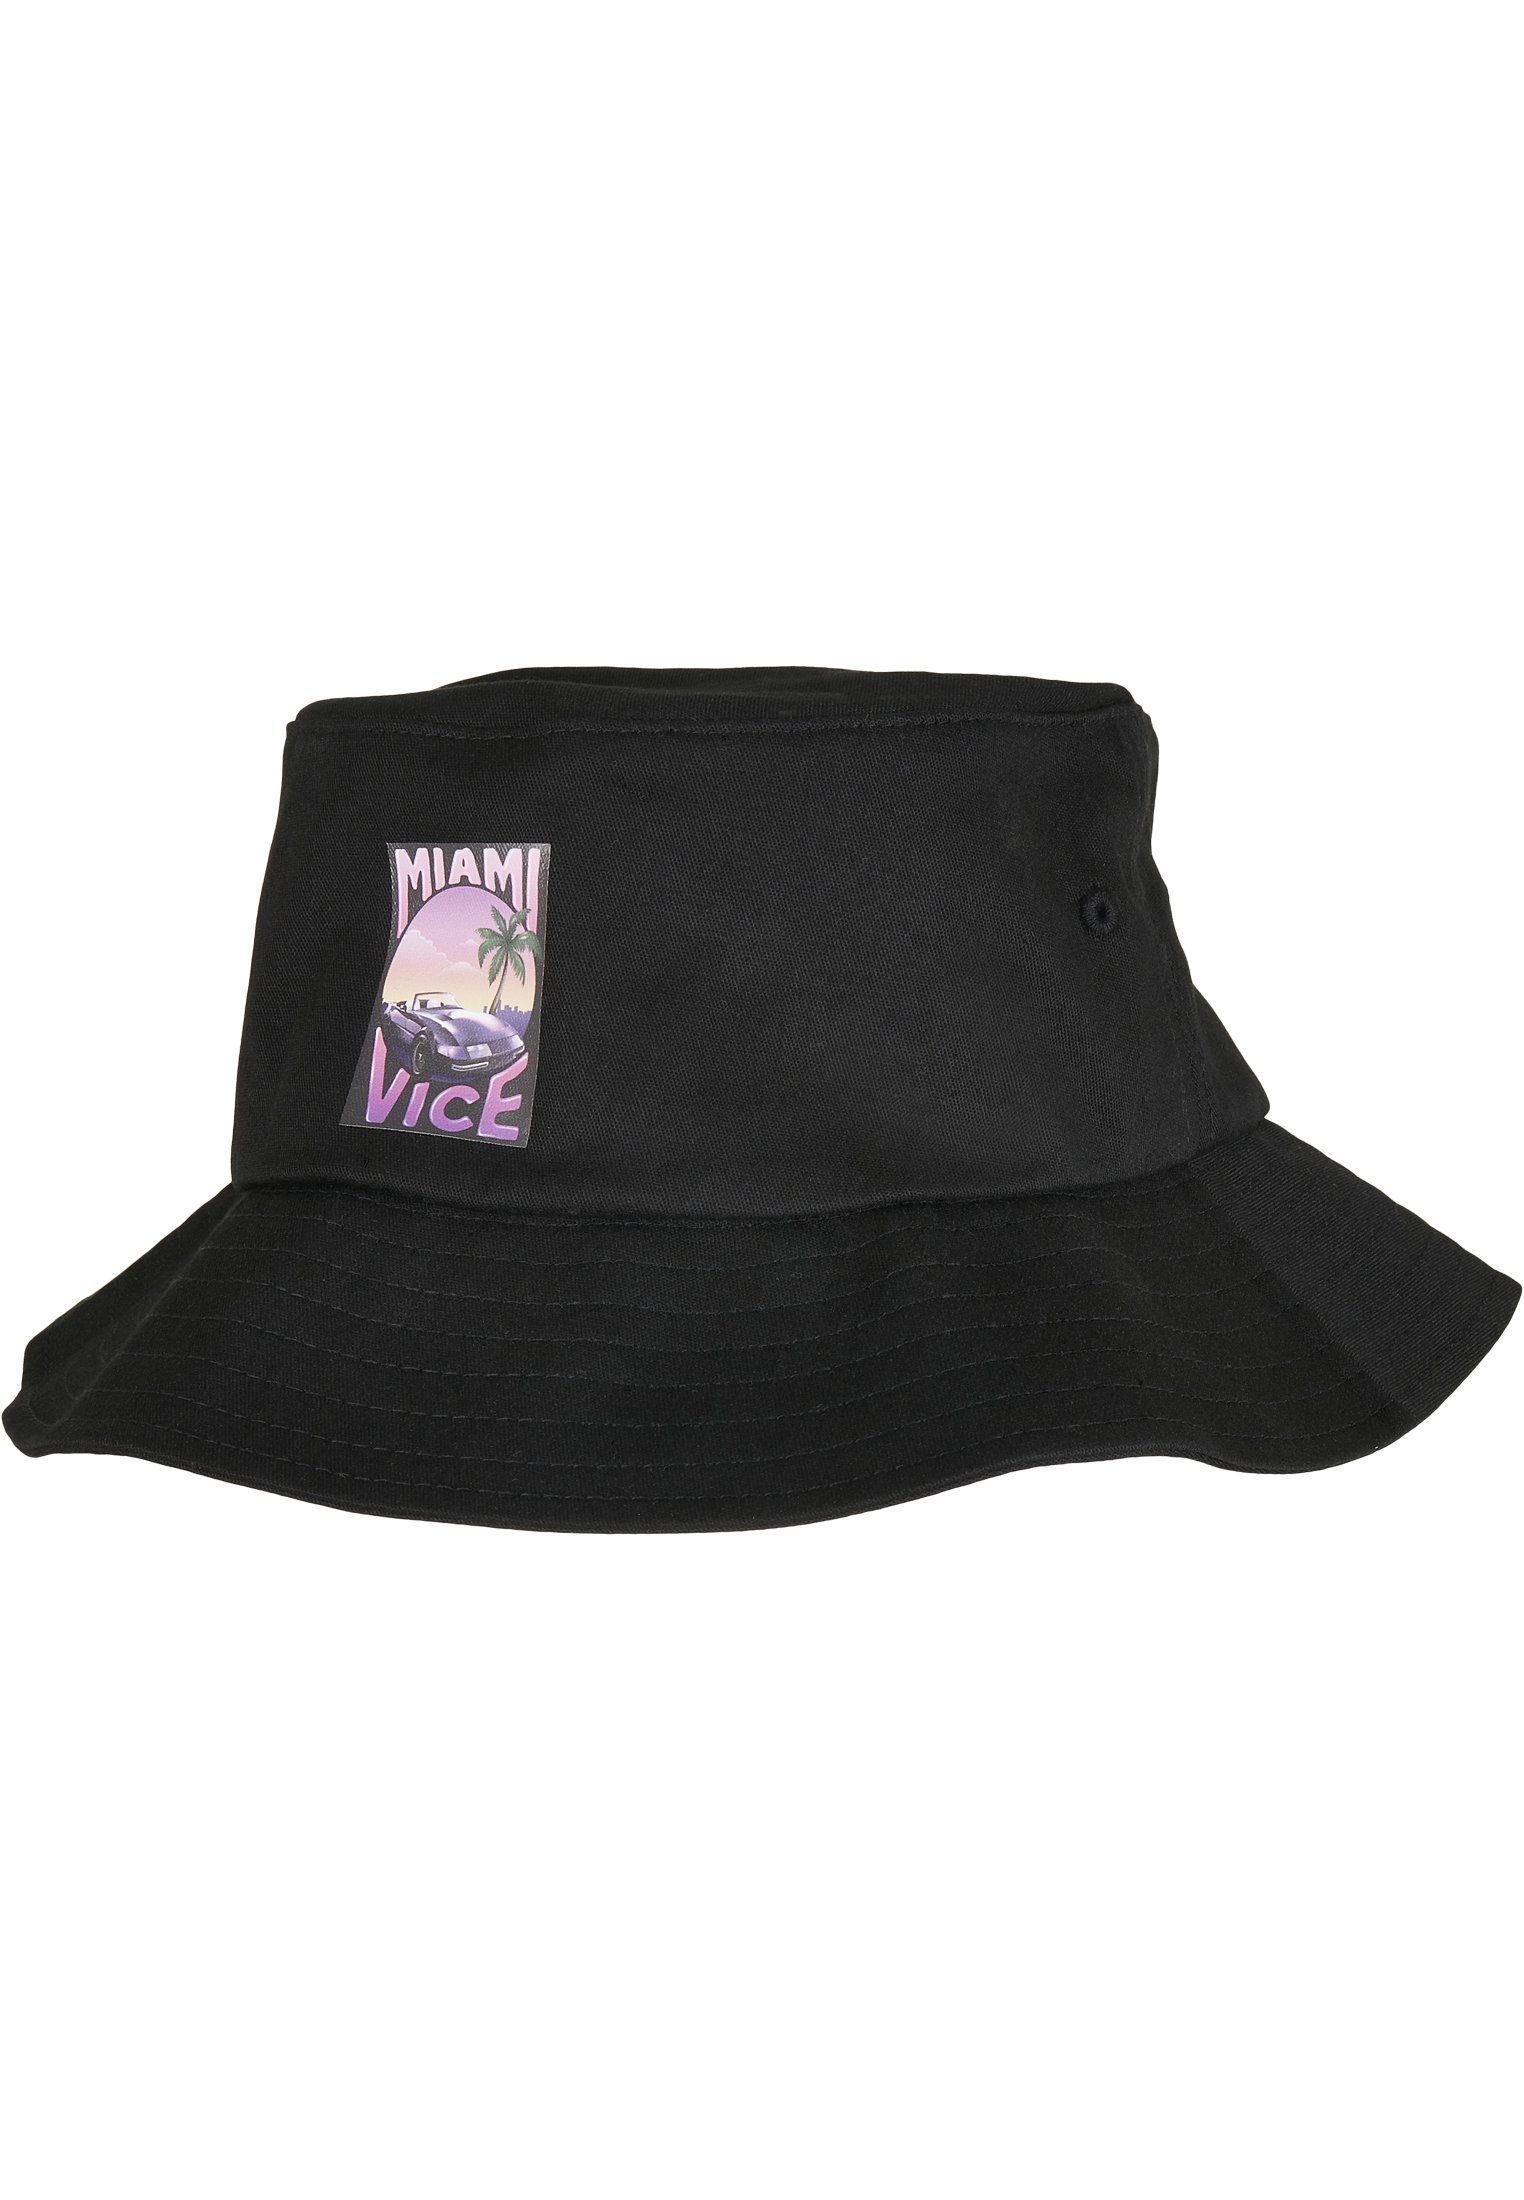 Bucket Hat Bucket Merchcode Print Cap Miami Vice Hat Flex